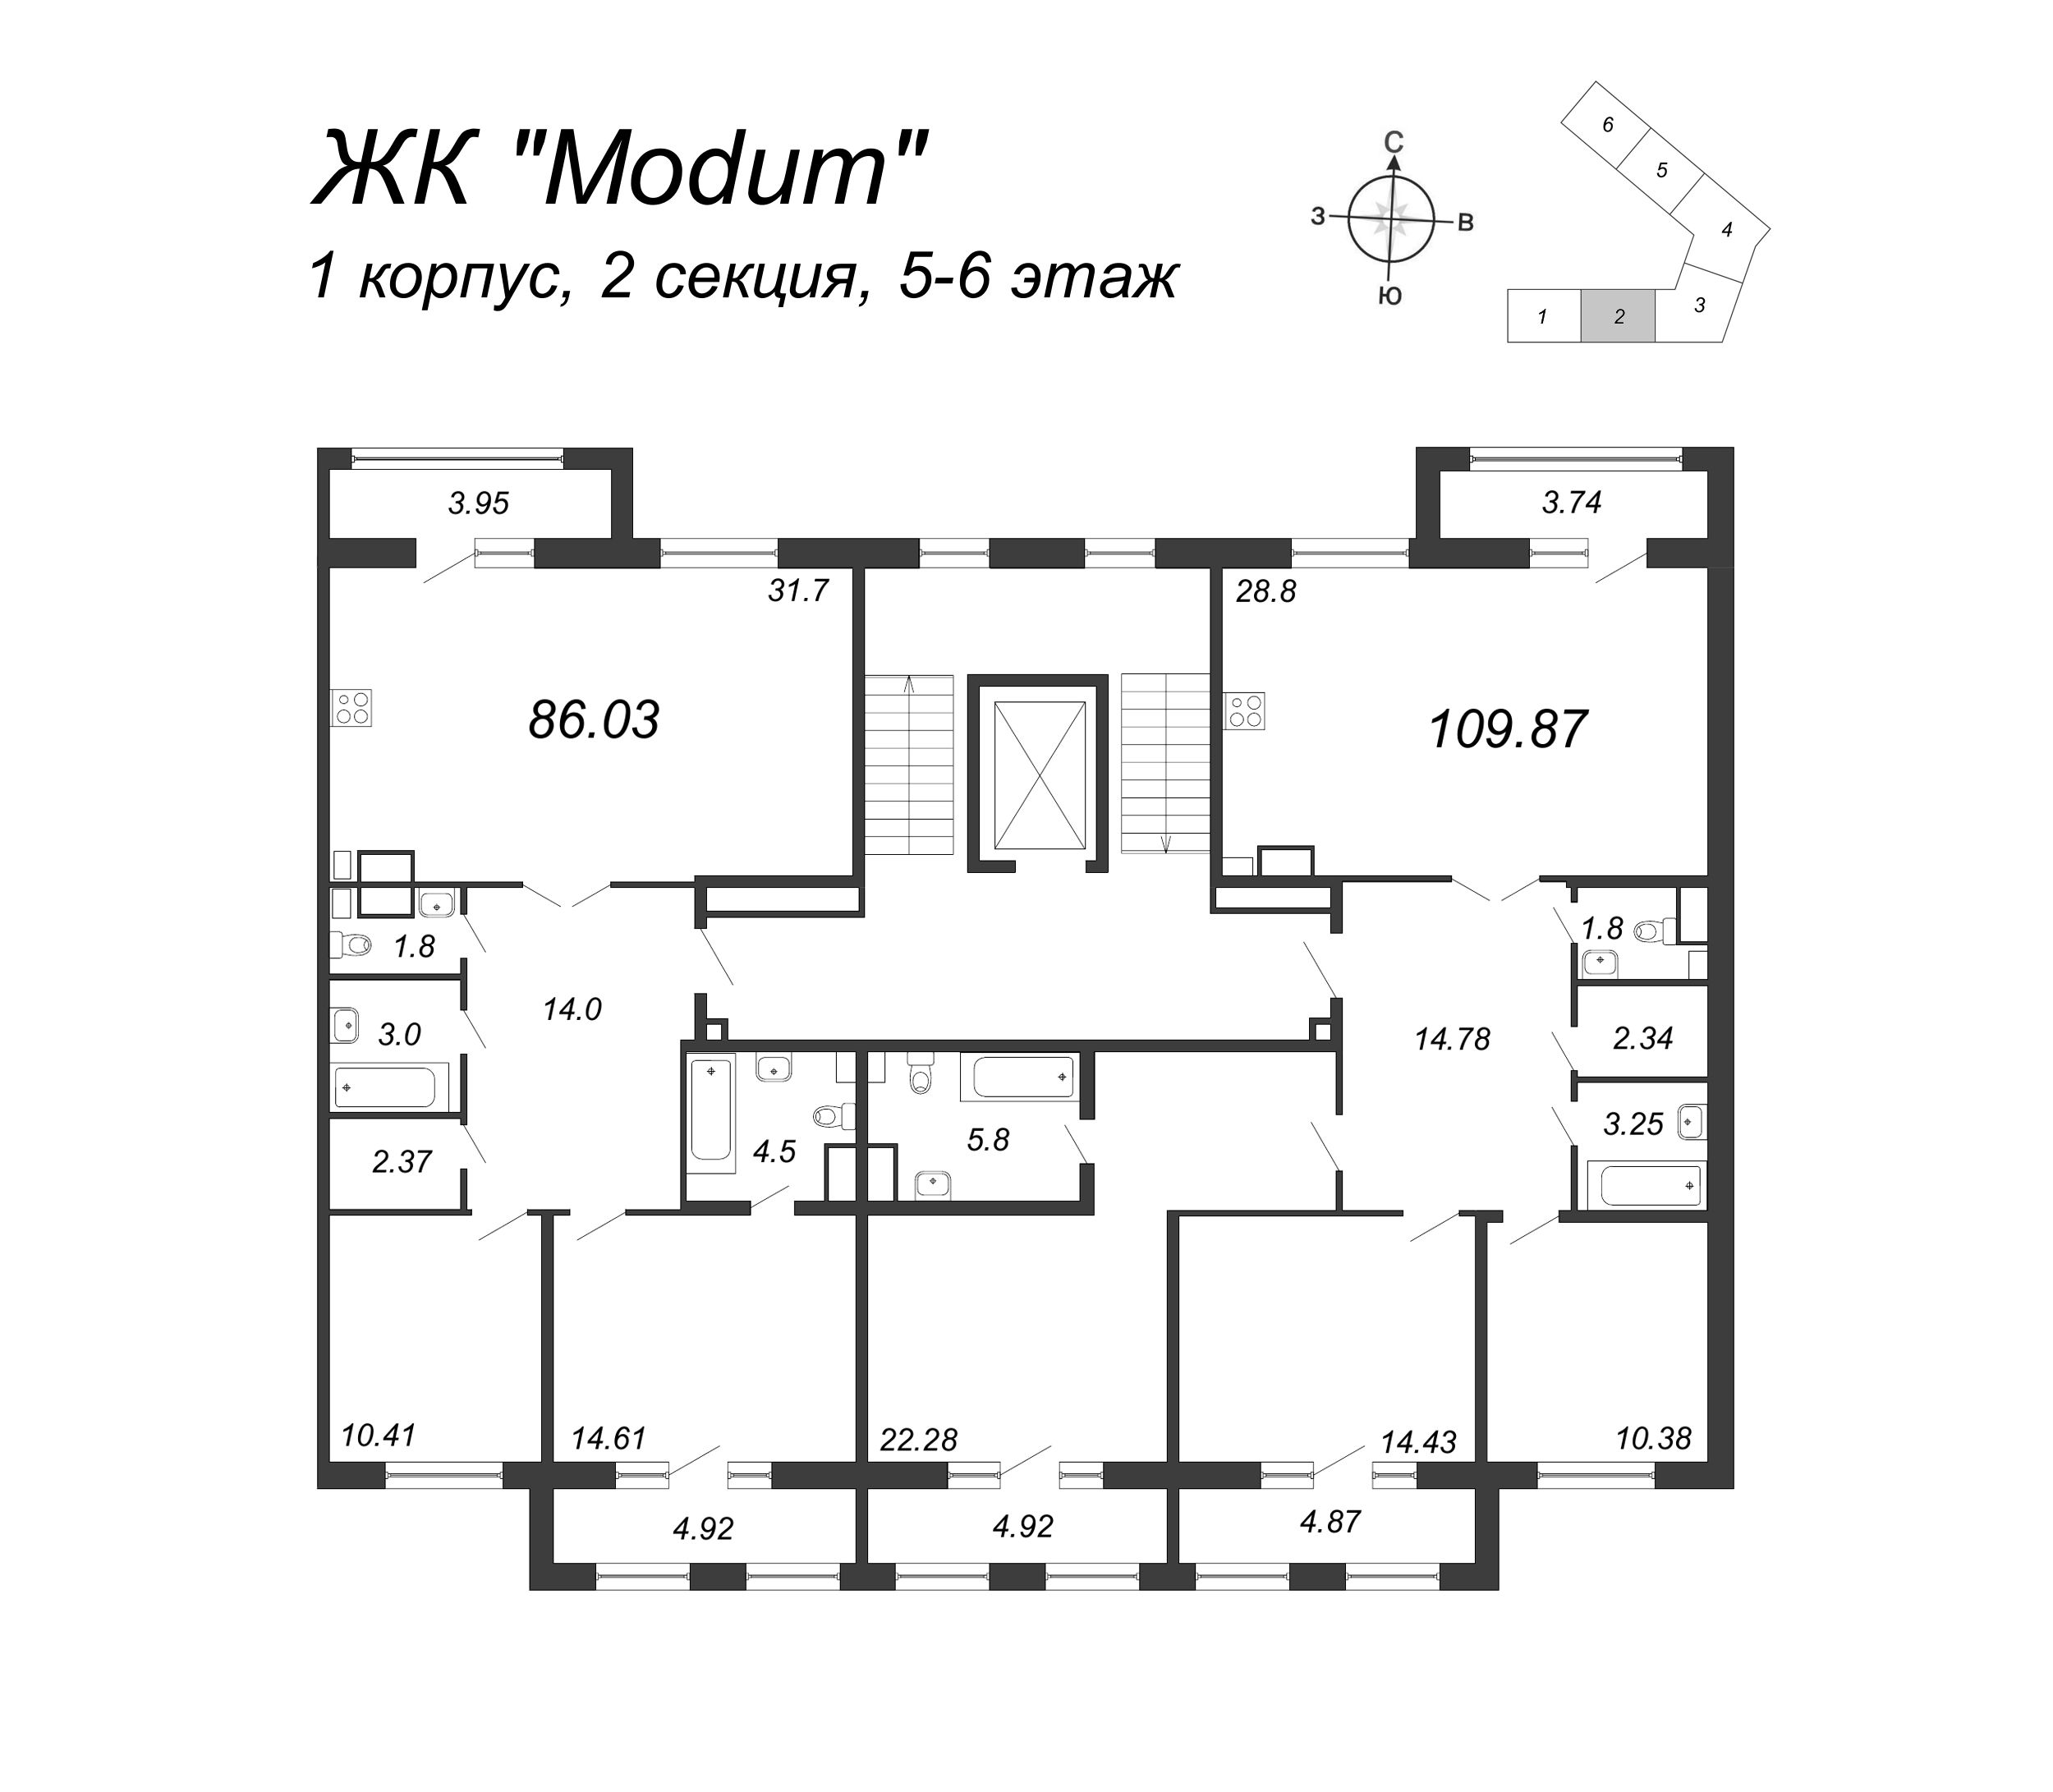 4-комнатная (Евро) квартира, 109.87 м² в ЖК "Modum" - планировка этажа